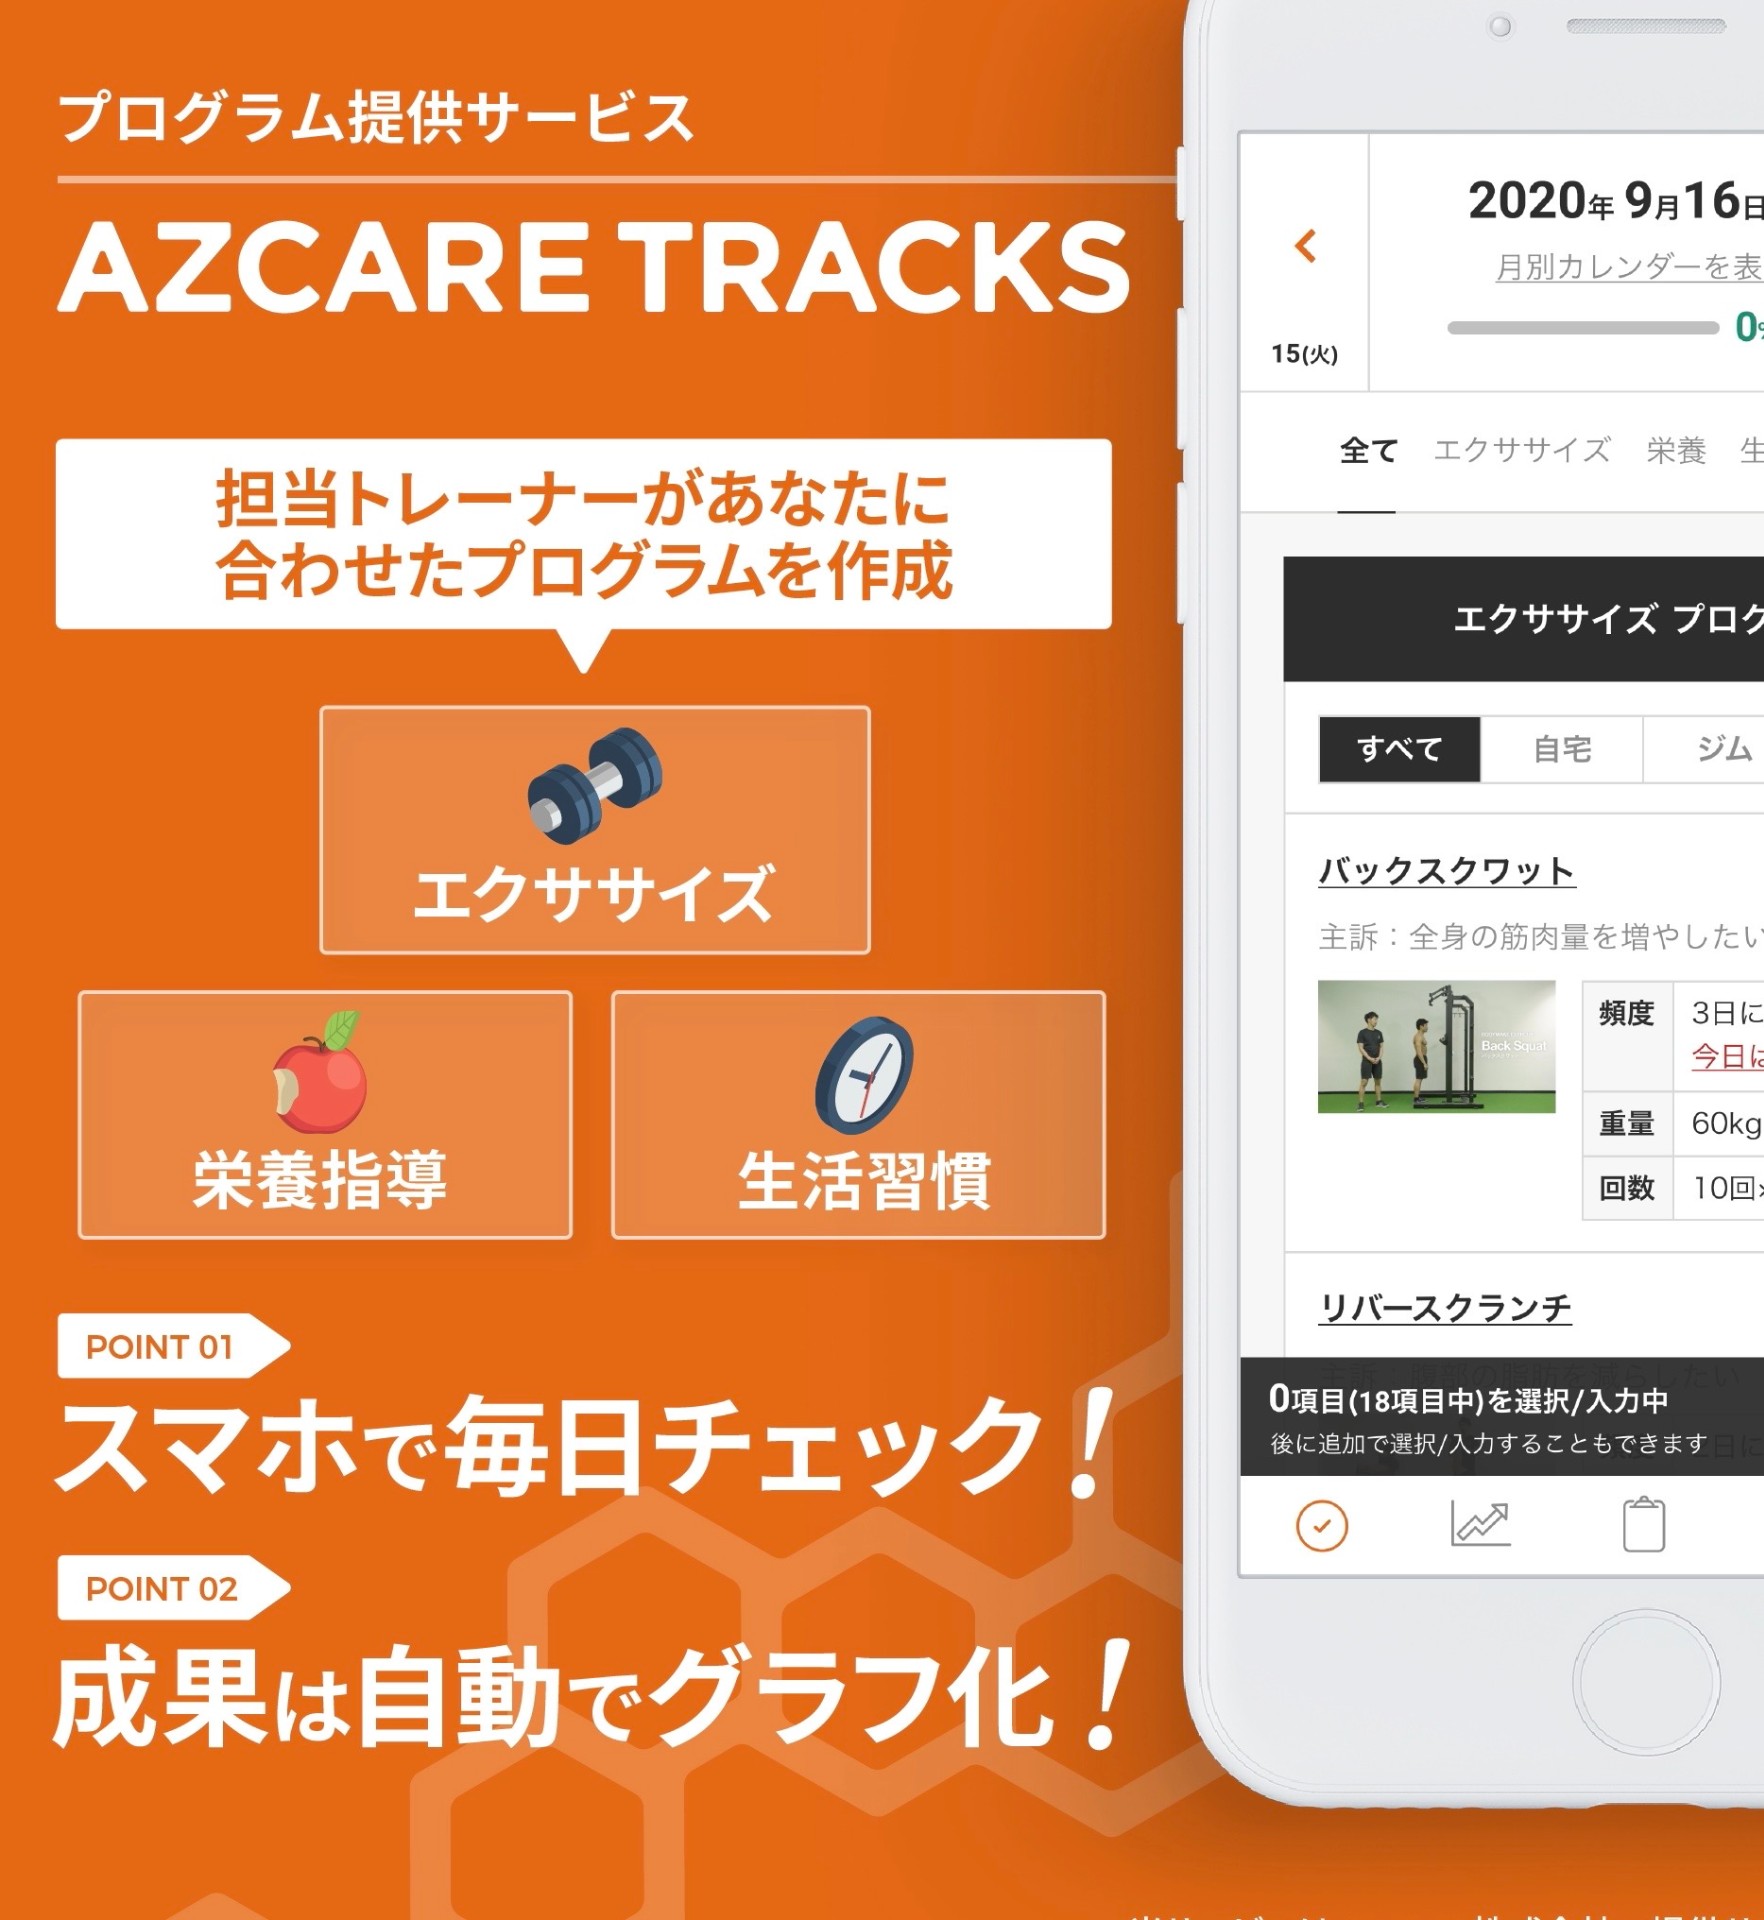 プログラム提供サービス「AZCARE TRACKS」